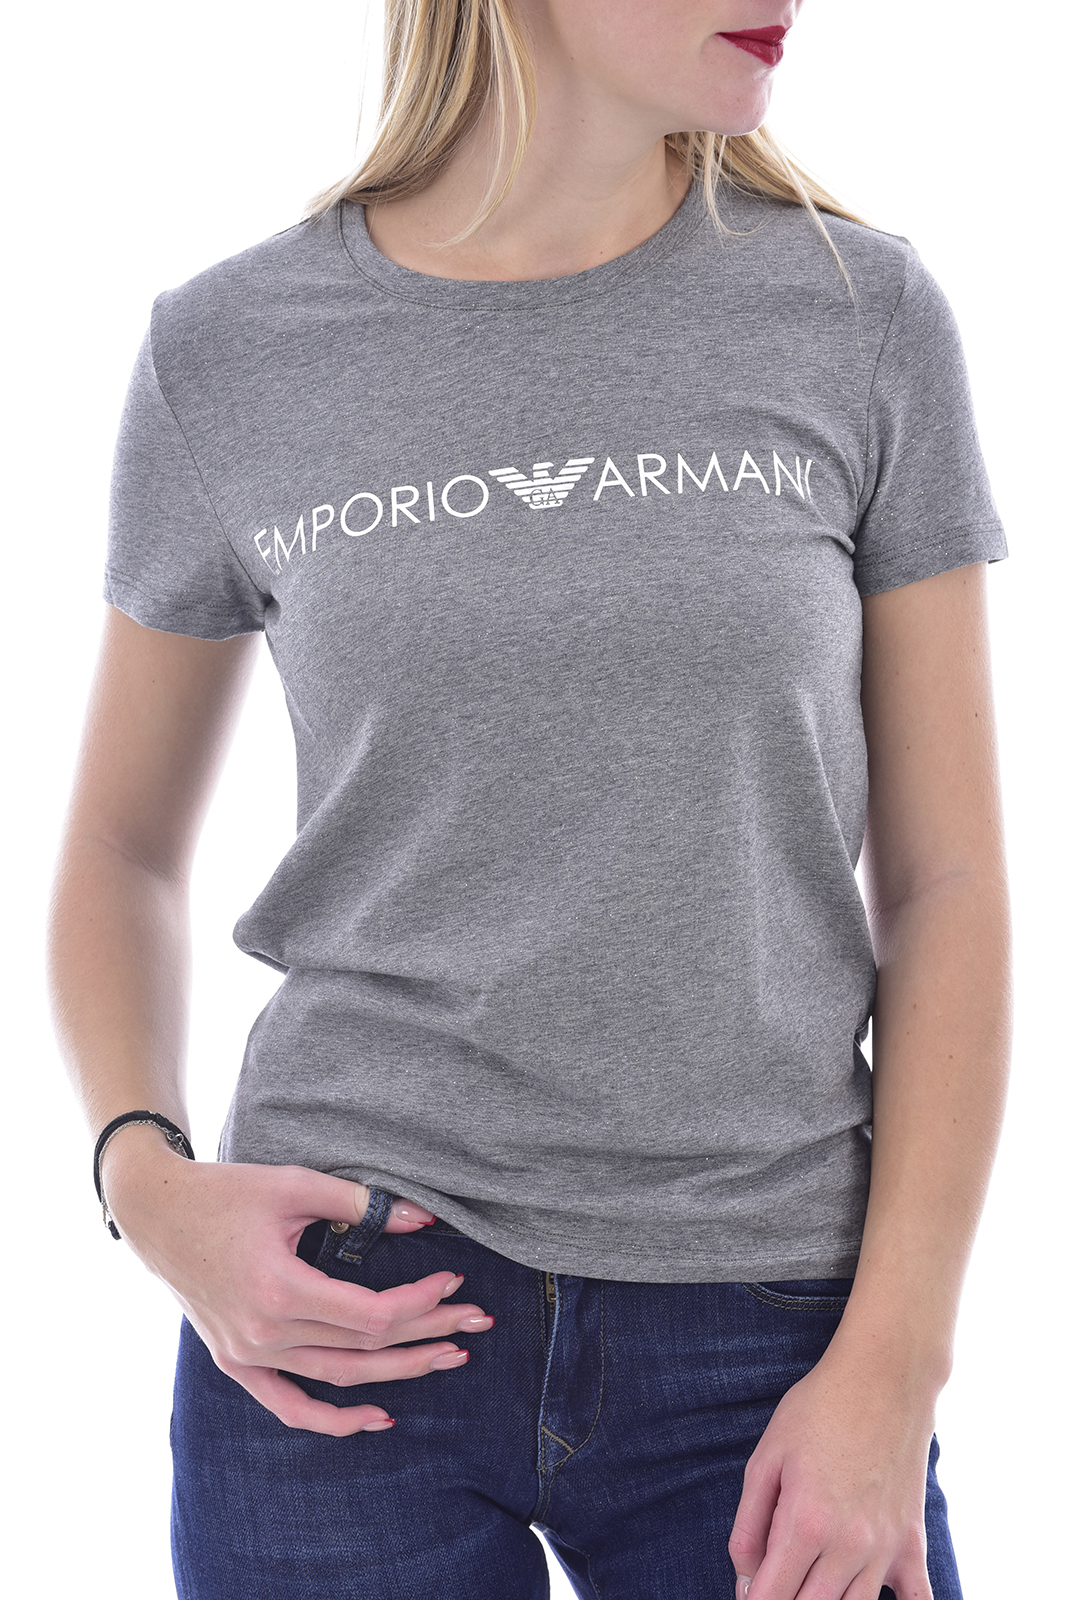 Emporio Armani Tee-shirt Stretch Gris 164272 0a225 